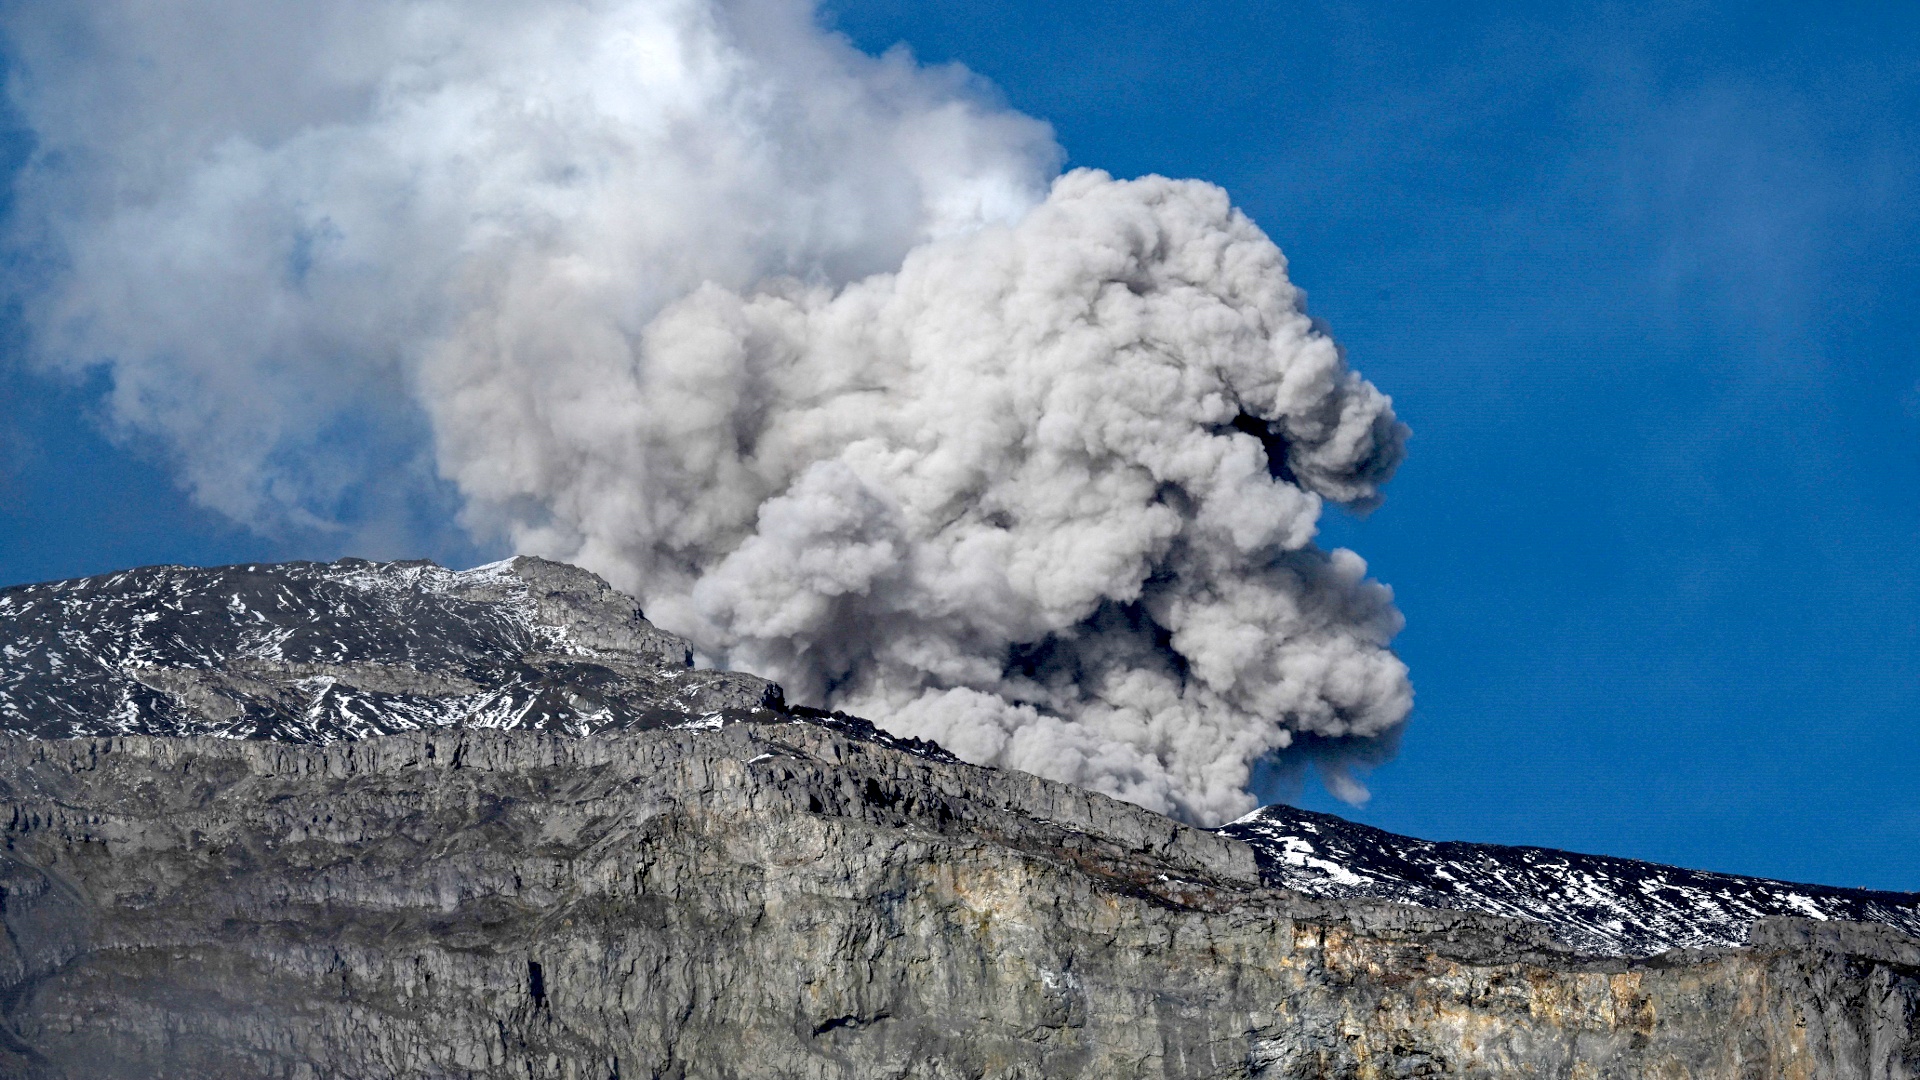 Колумбийский вулкан Руис выбросил огромный столб пепла, возможно извержение